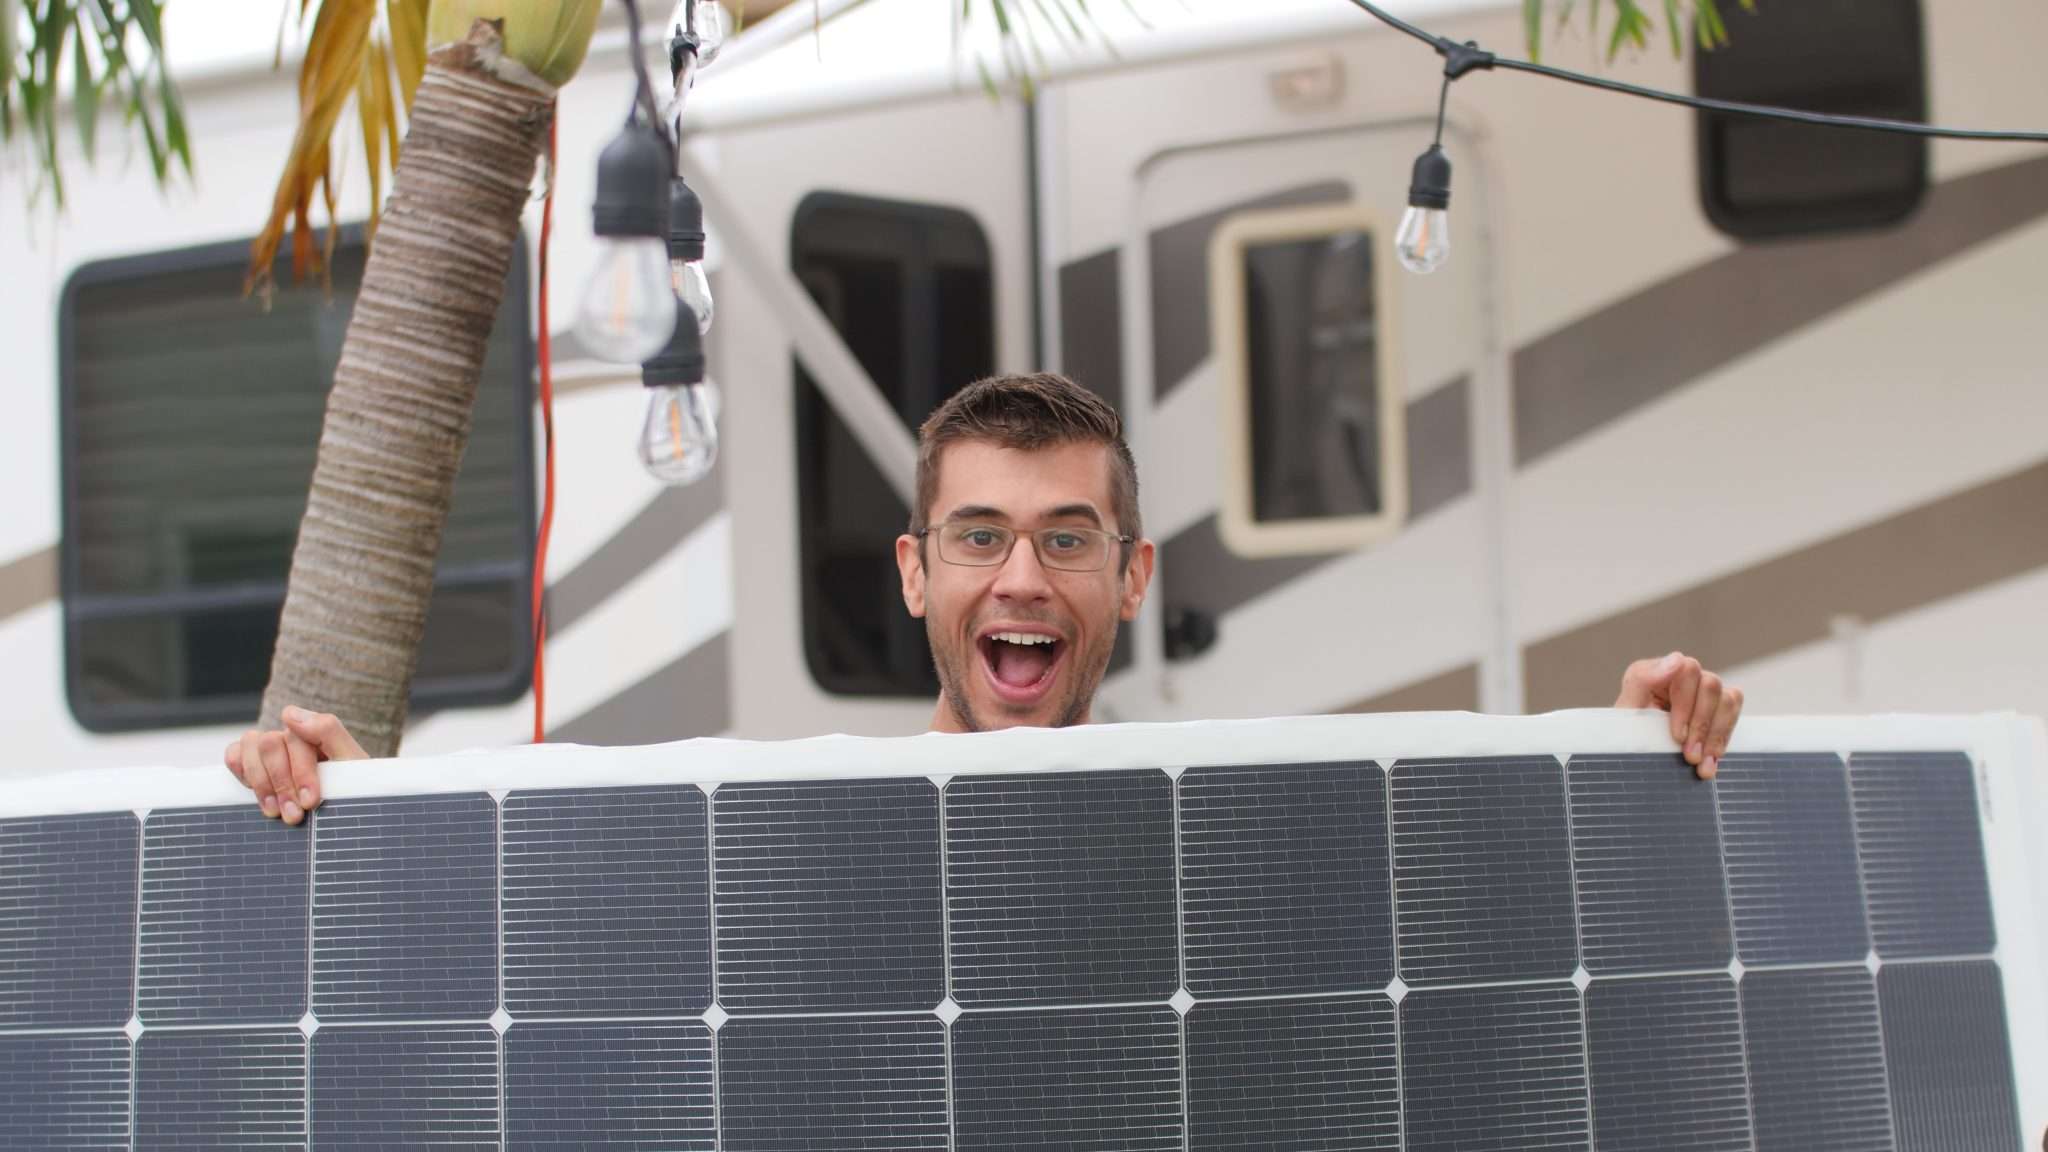 RV solar installer holding up a solar panel